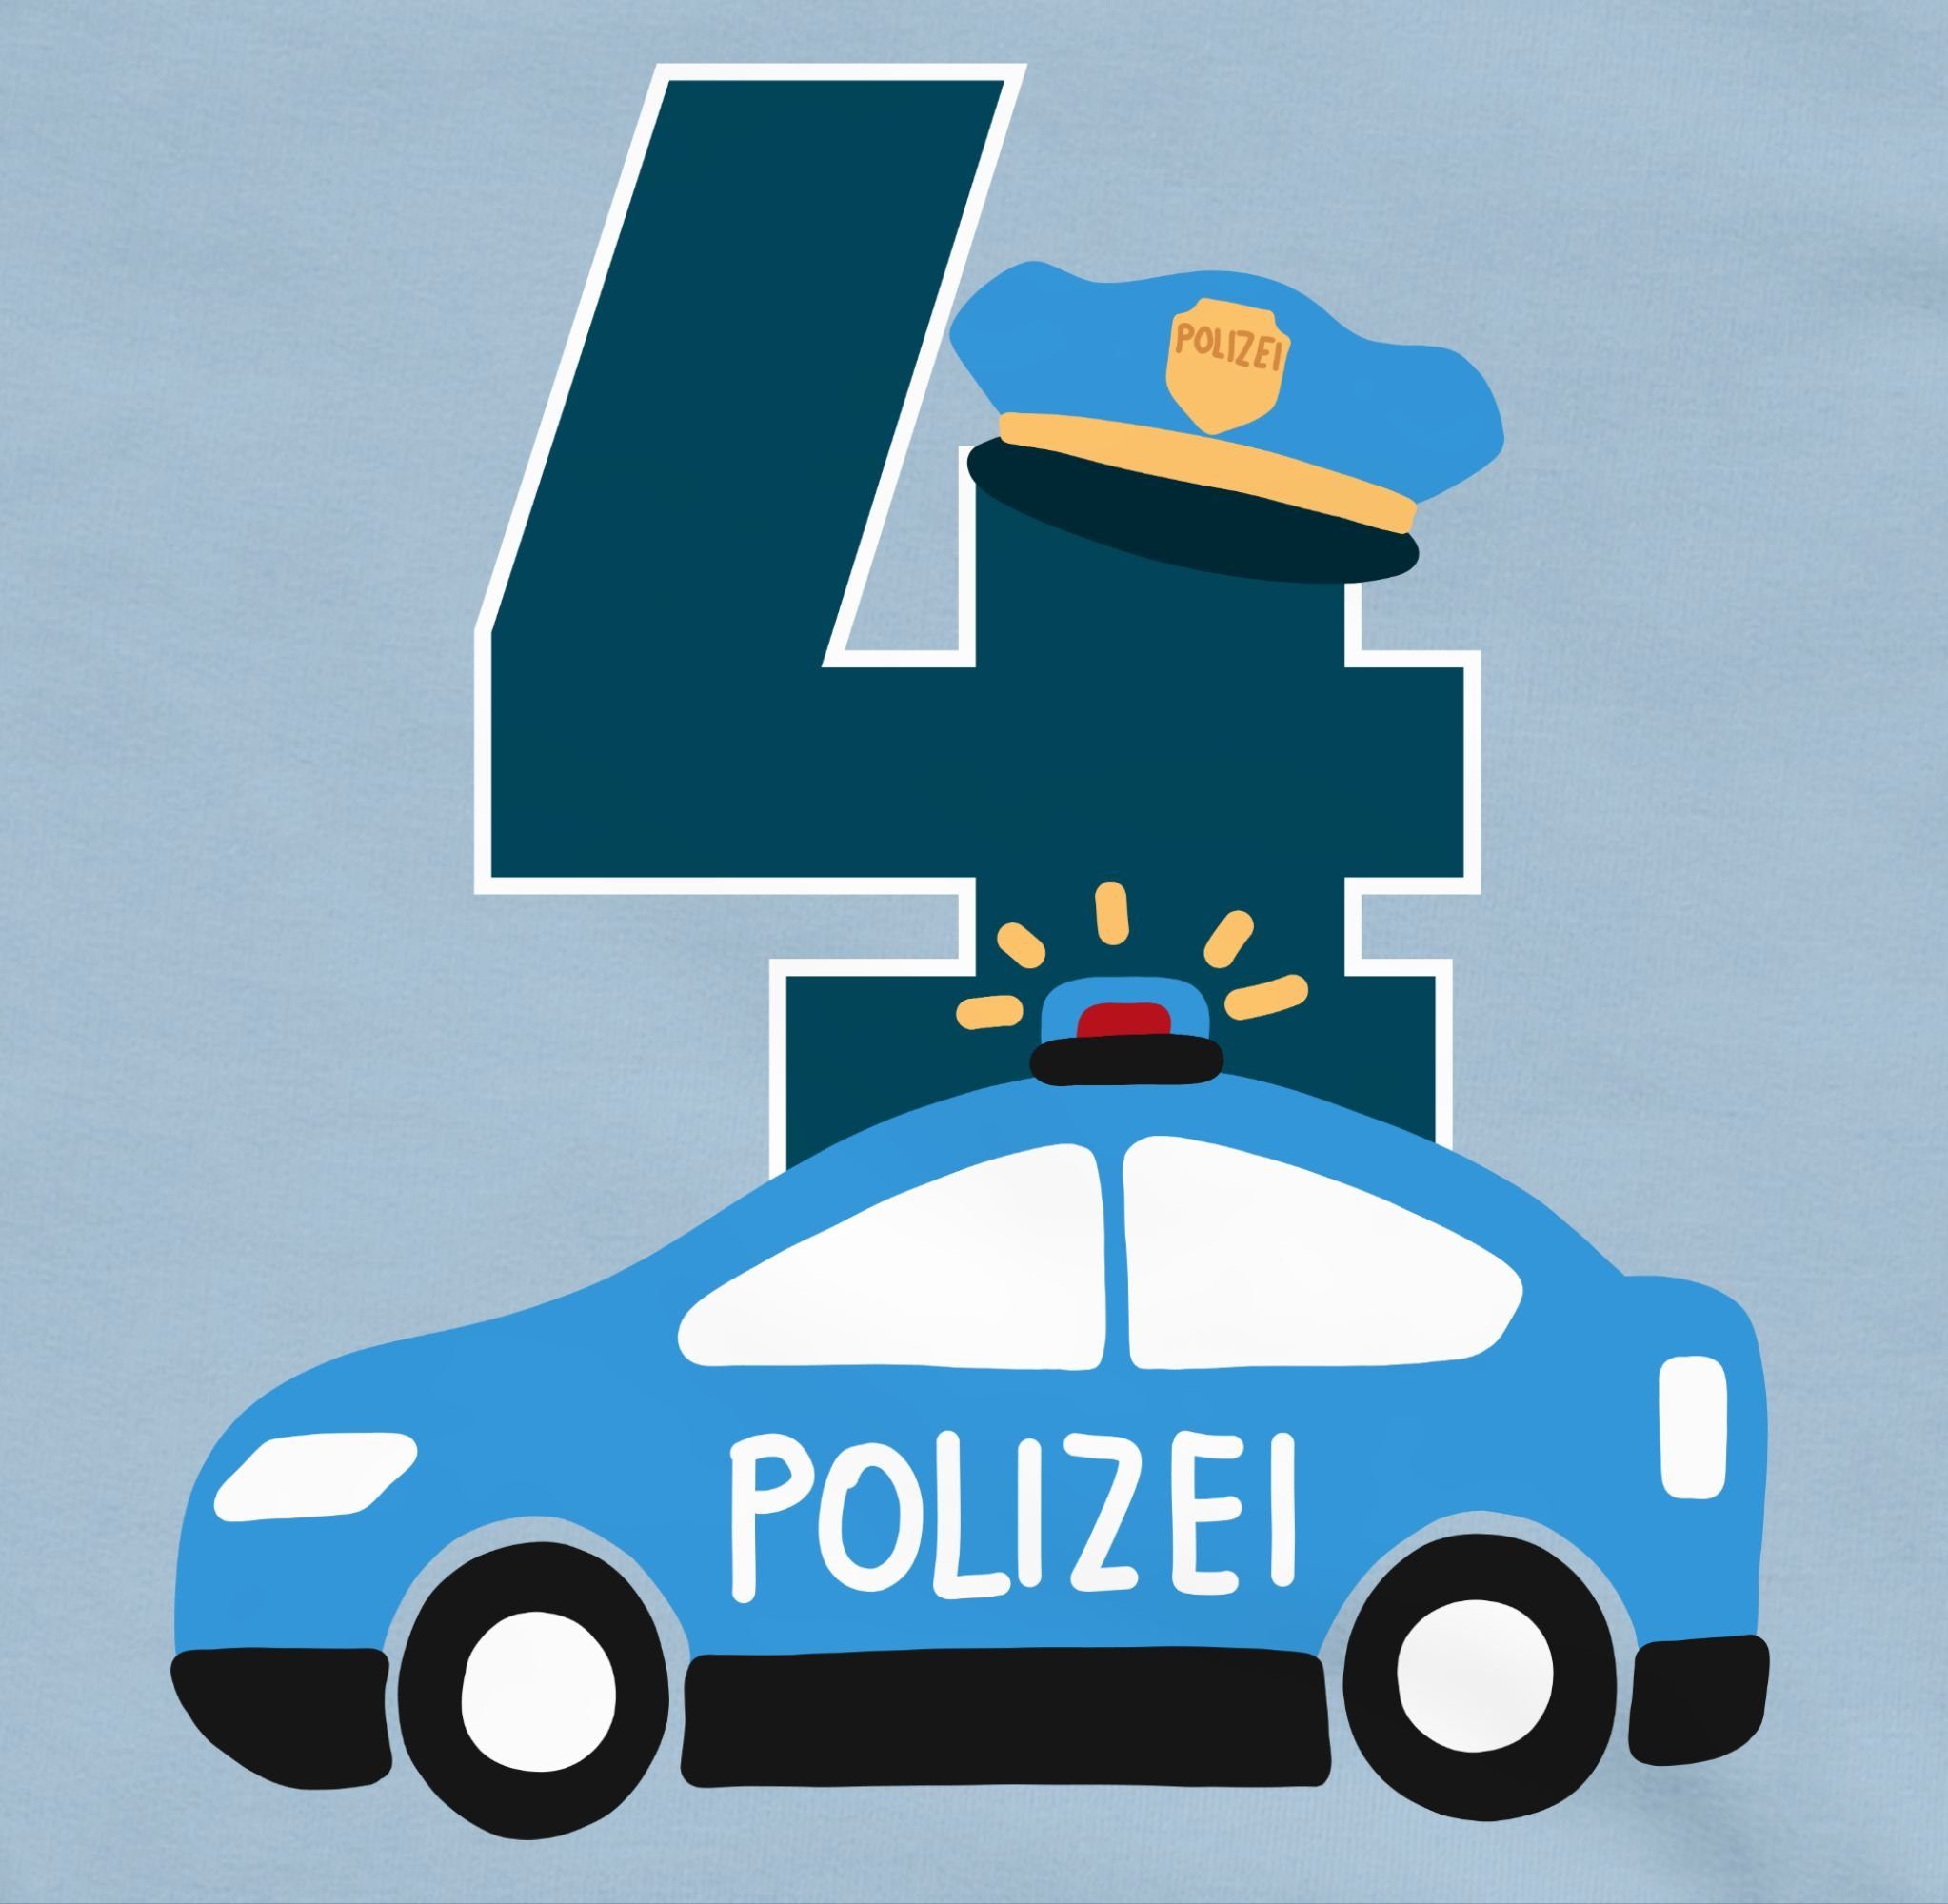 Vierter Geburtstag 1 Hellblau Sweatshirt 4. Polizei Shirtracer